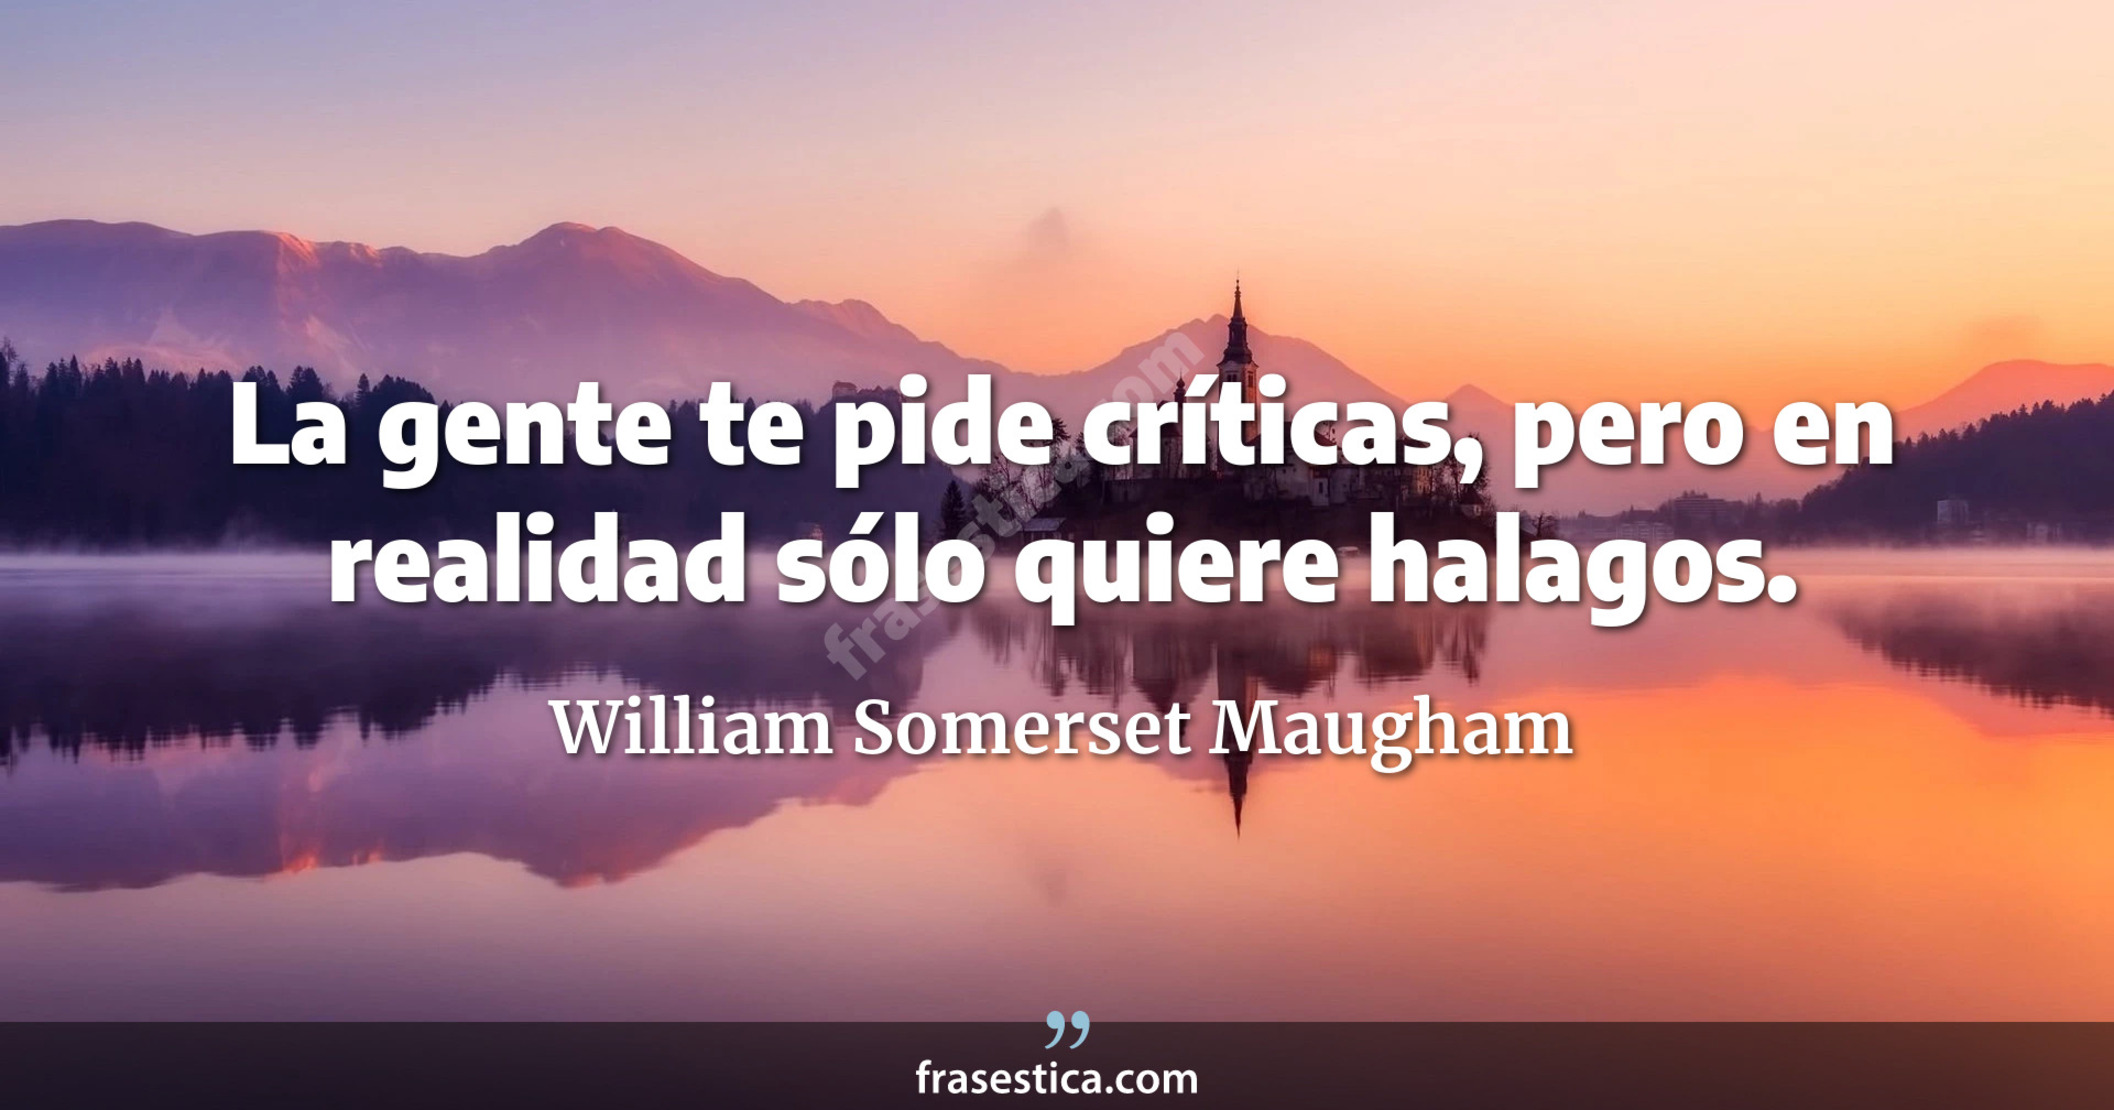 La gente te pide críticas, pero en realidad sólo quiere halagos. - William Somerset Maugham